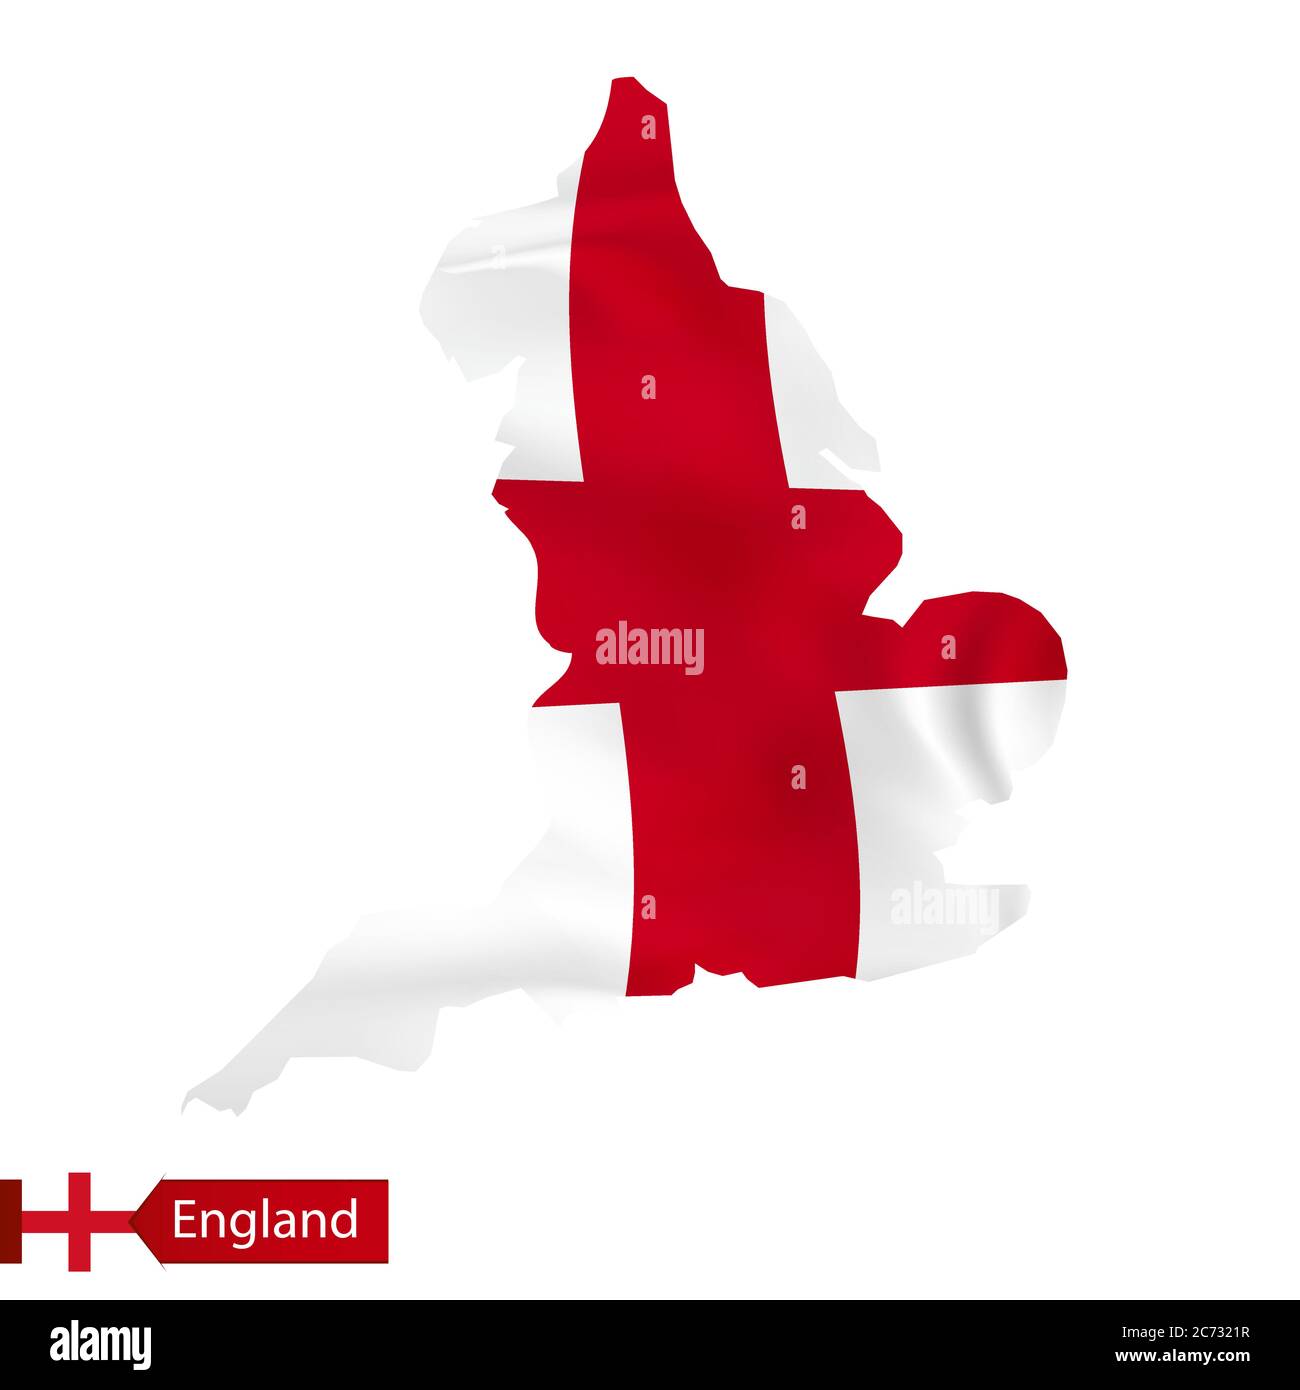 Mappa dell'Inghilterra con bandiera ondulata del paese. Illustrazione vettoriale. Illustrazione Vettoriale